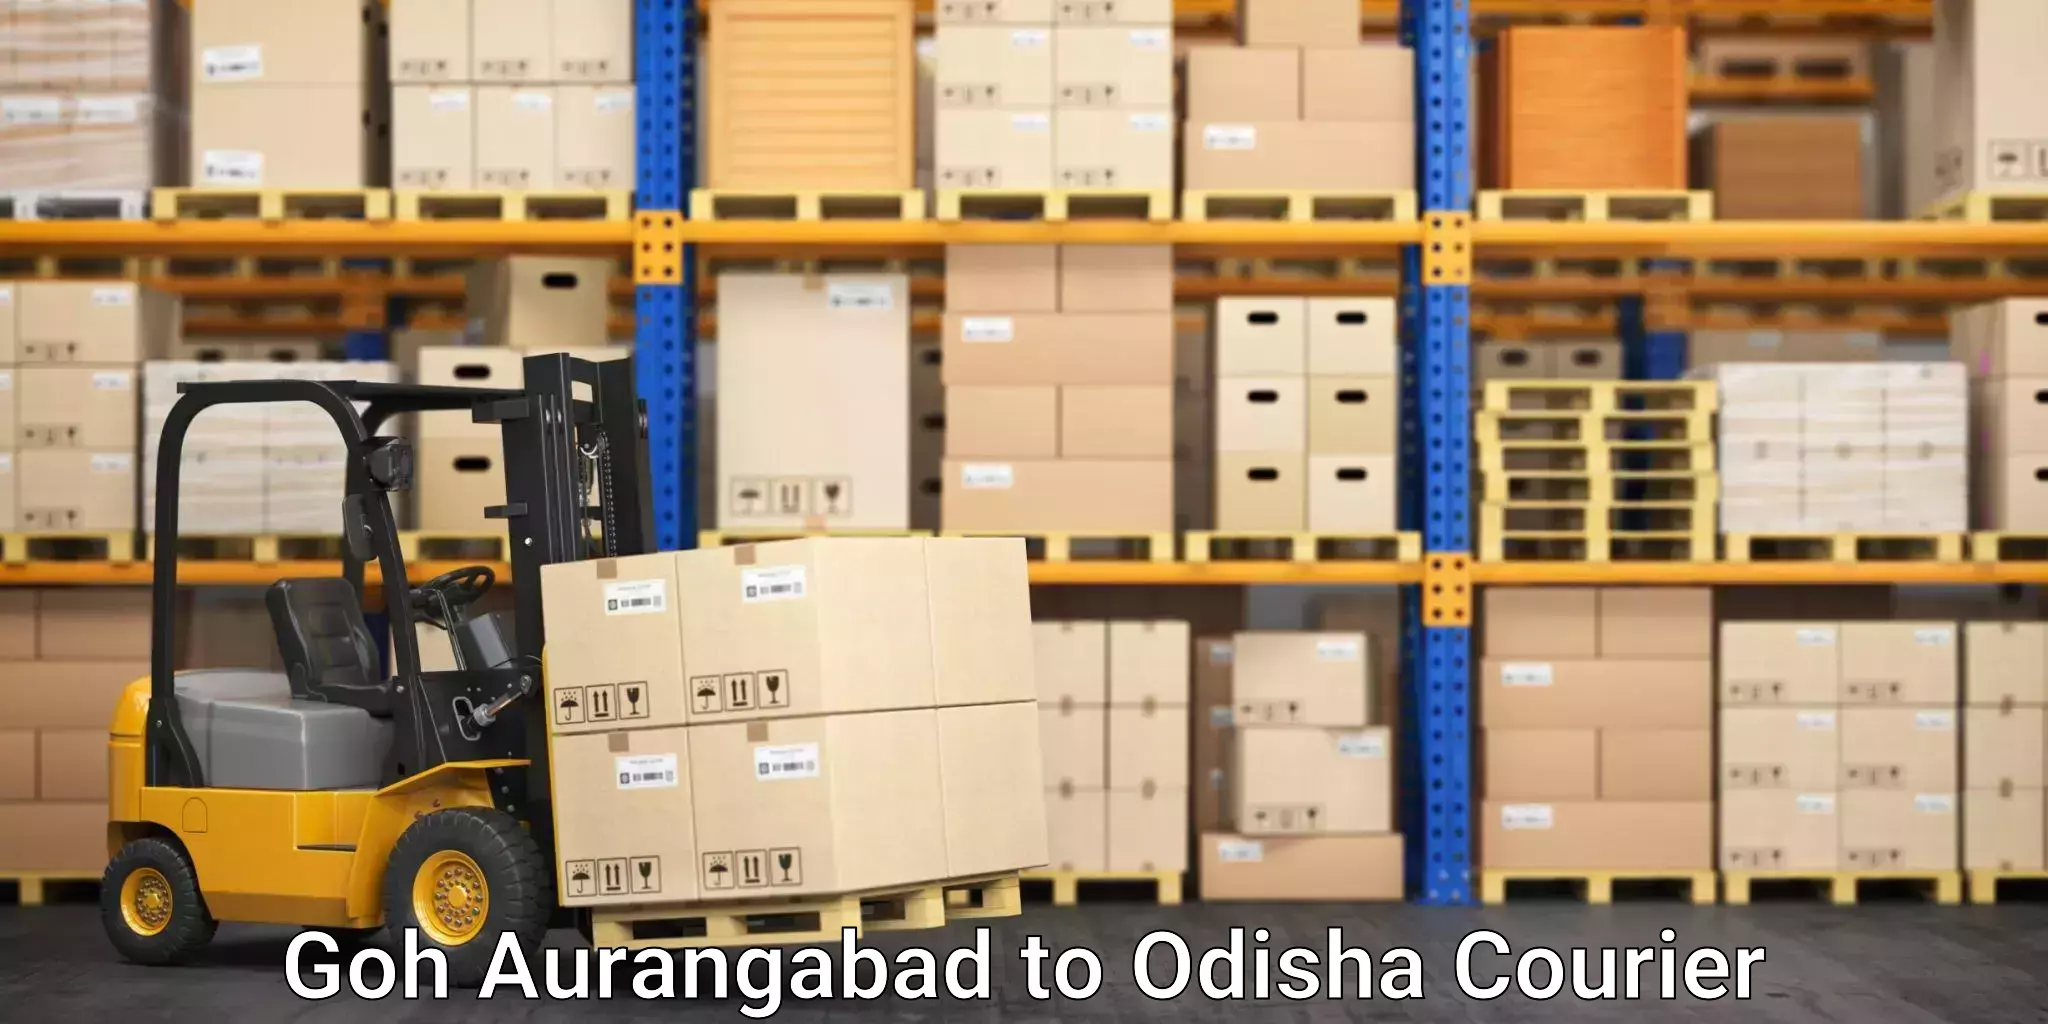 Furniture transport services in Goh Aurangabad to Semiliguda